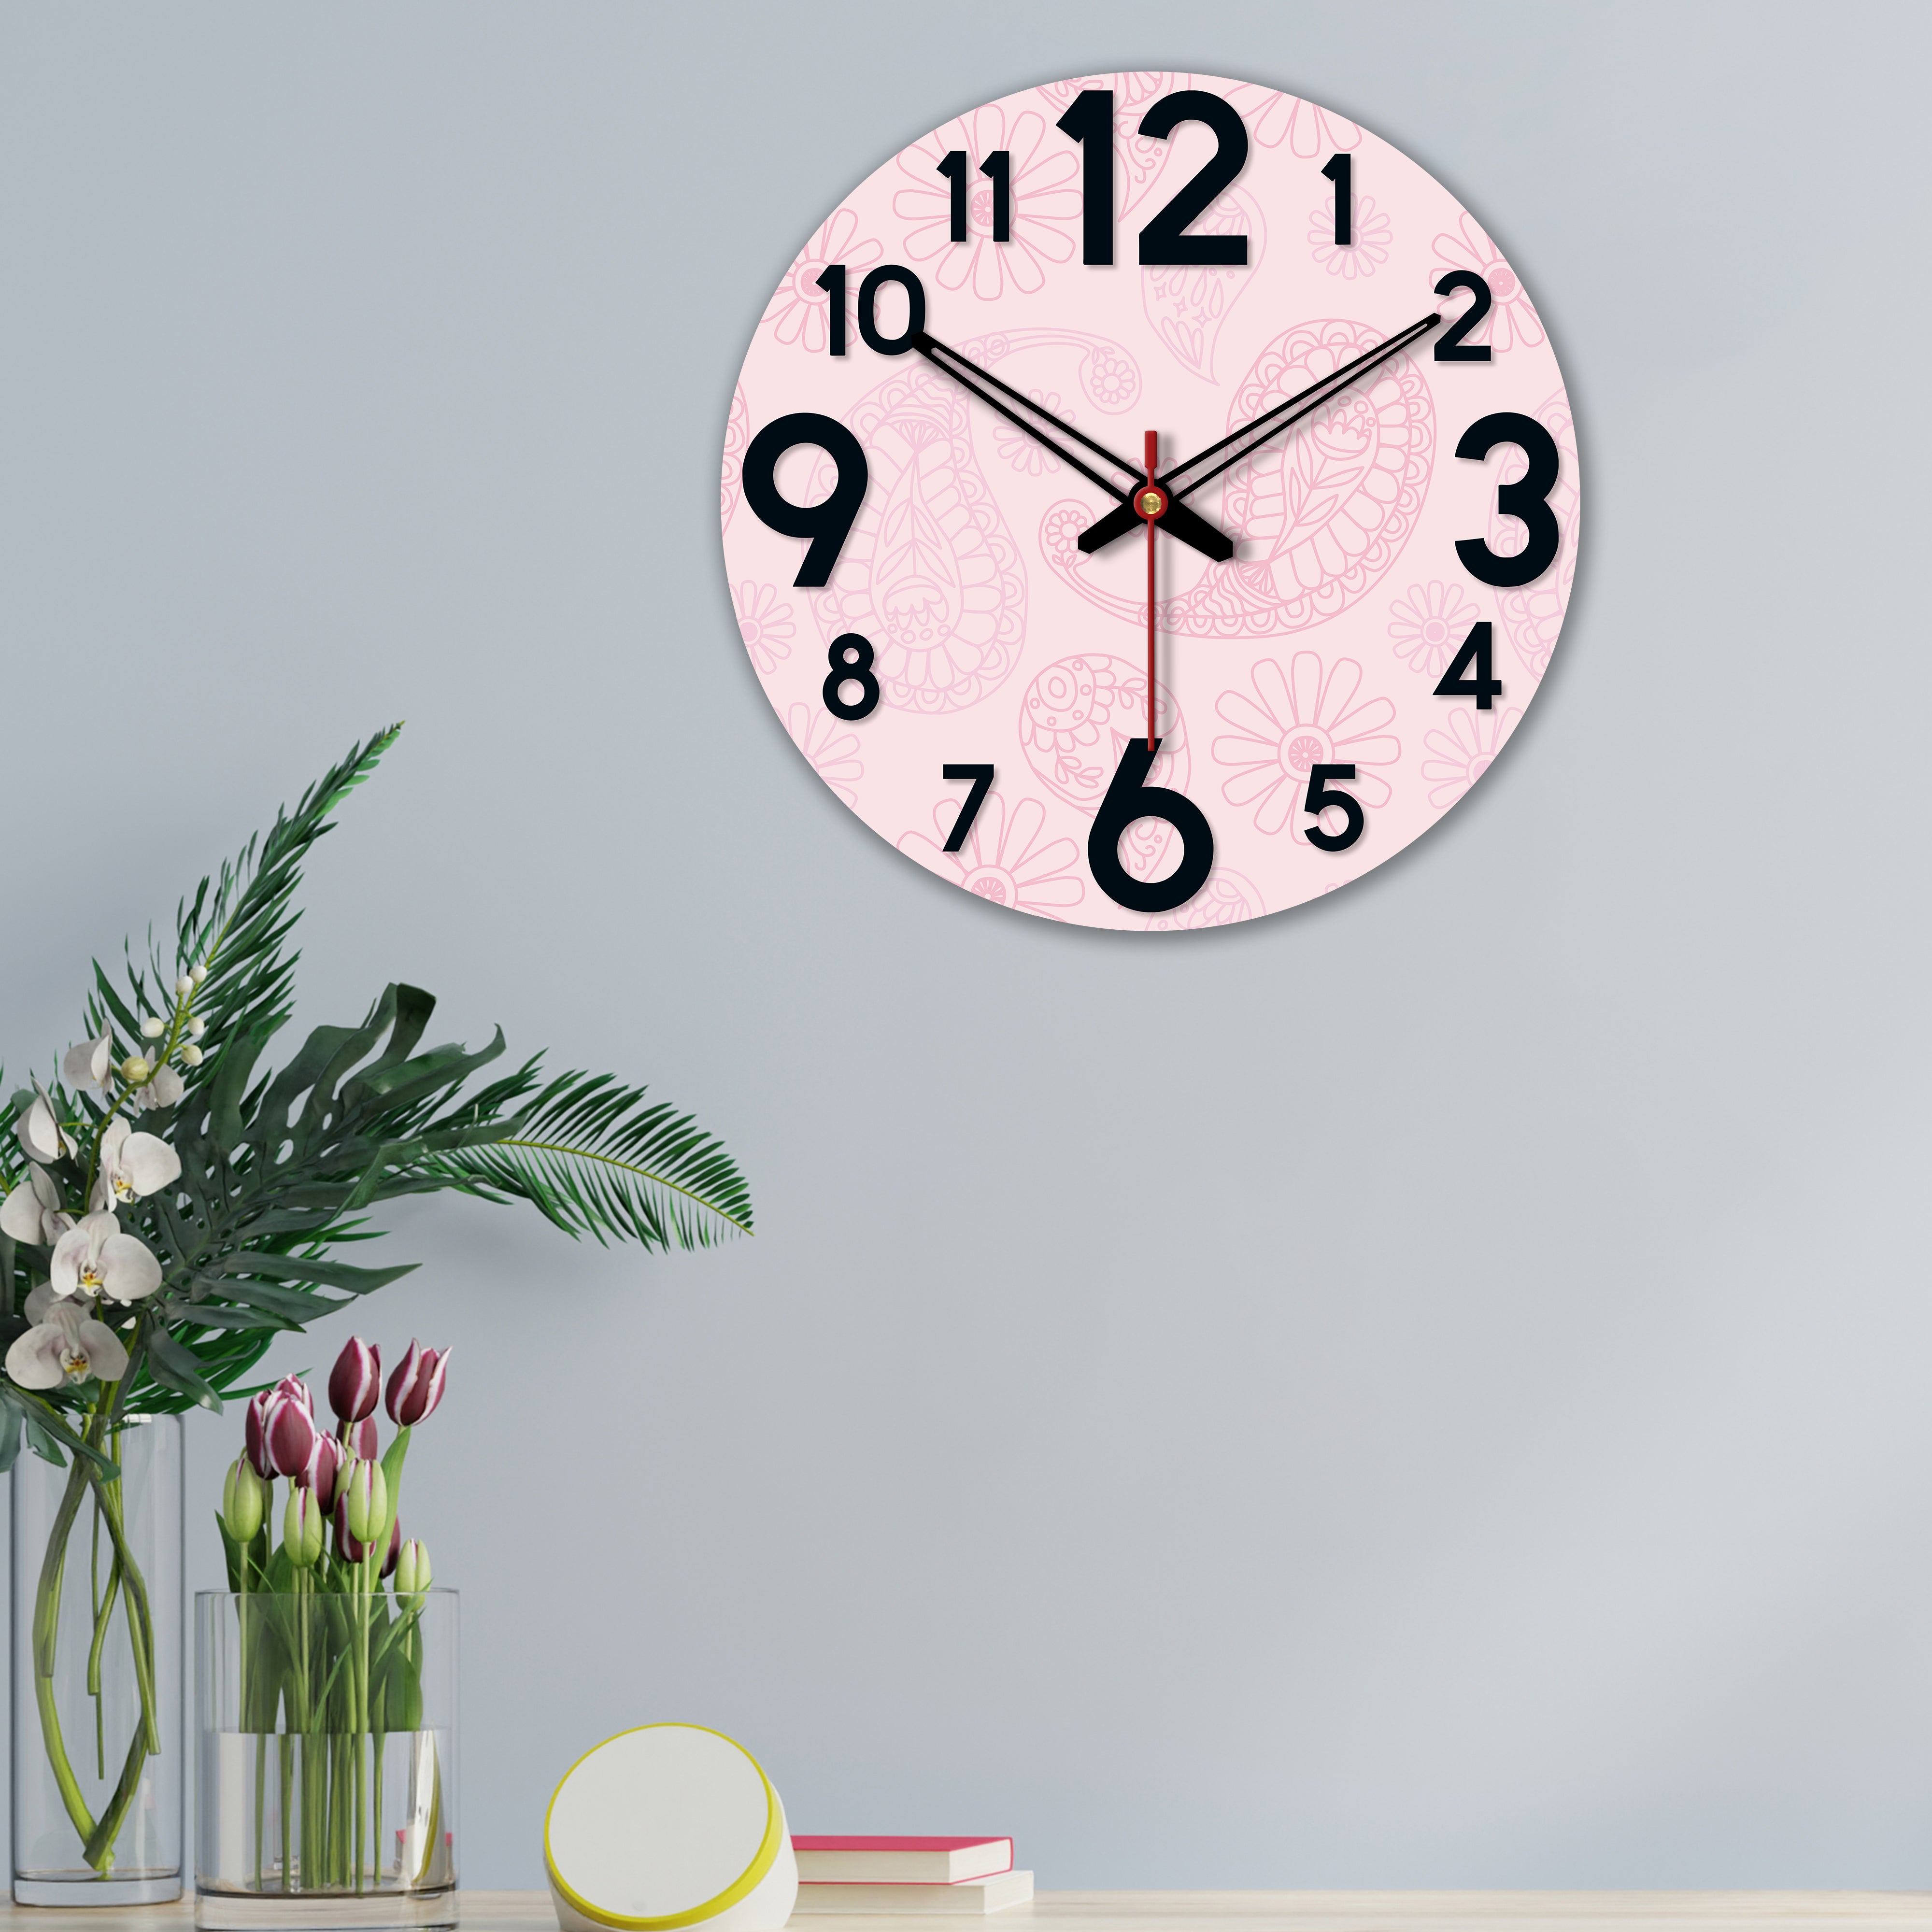 wooden wall clock design